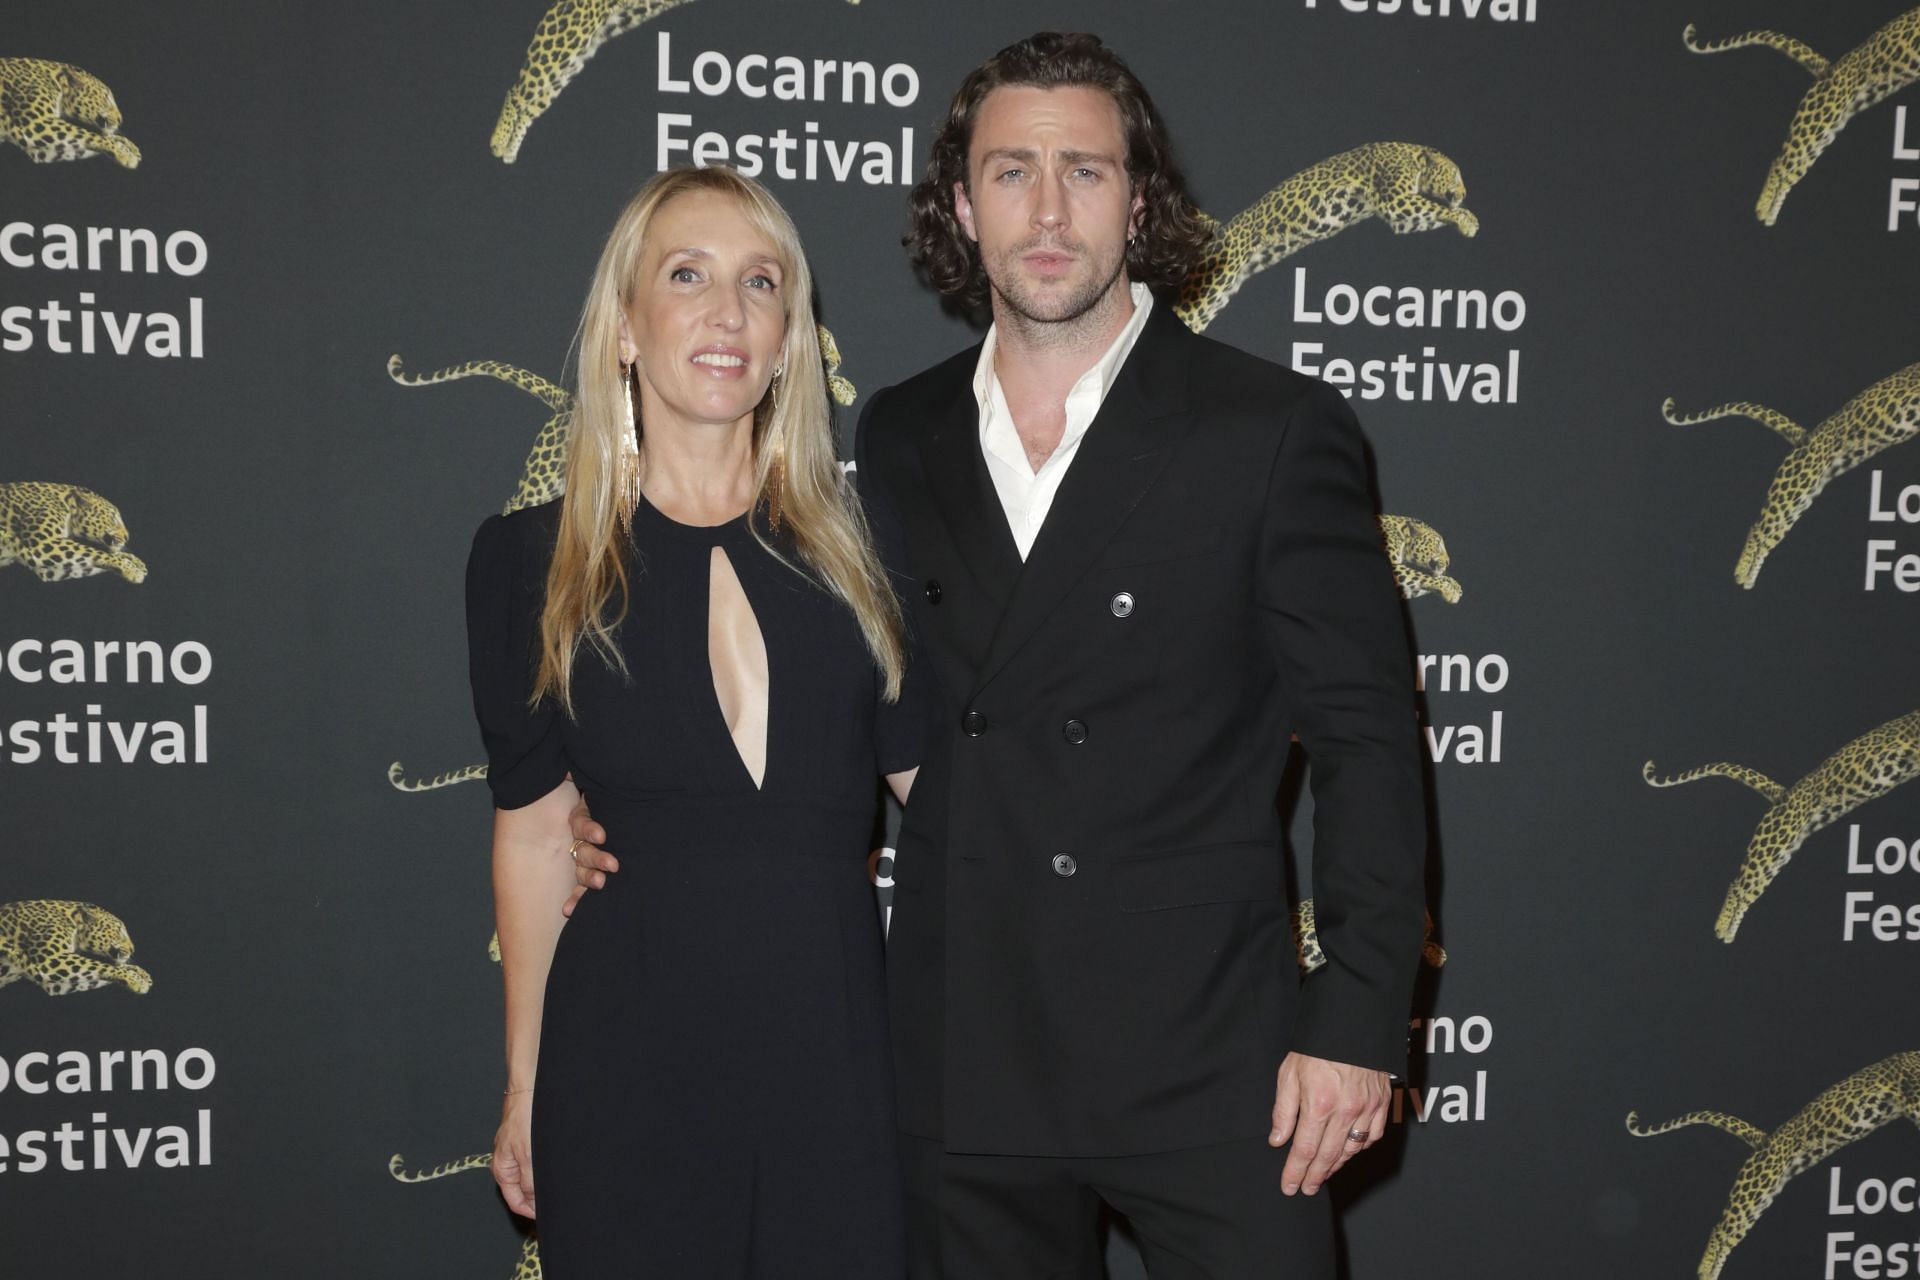 75th Locarno Film Festival - Day 1 - Red Carpet